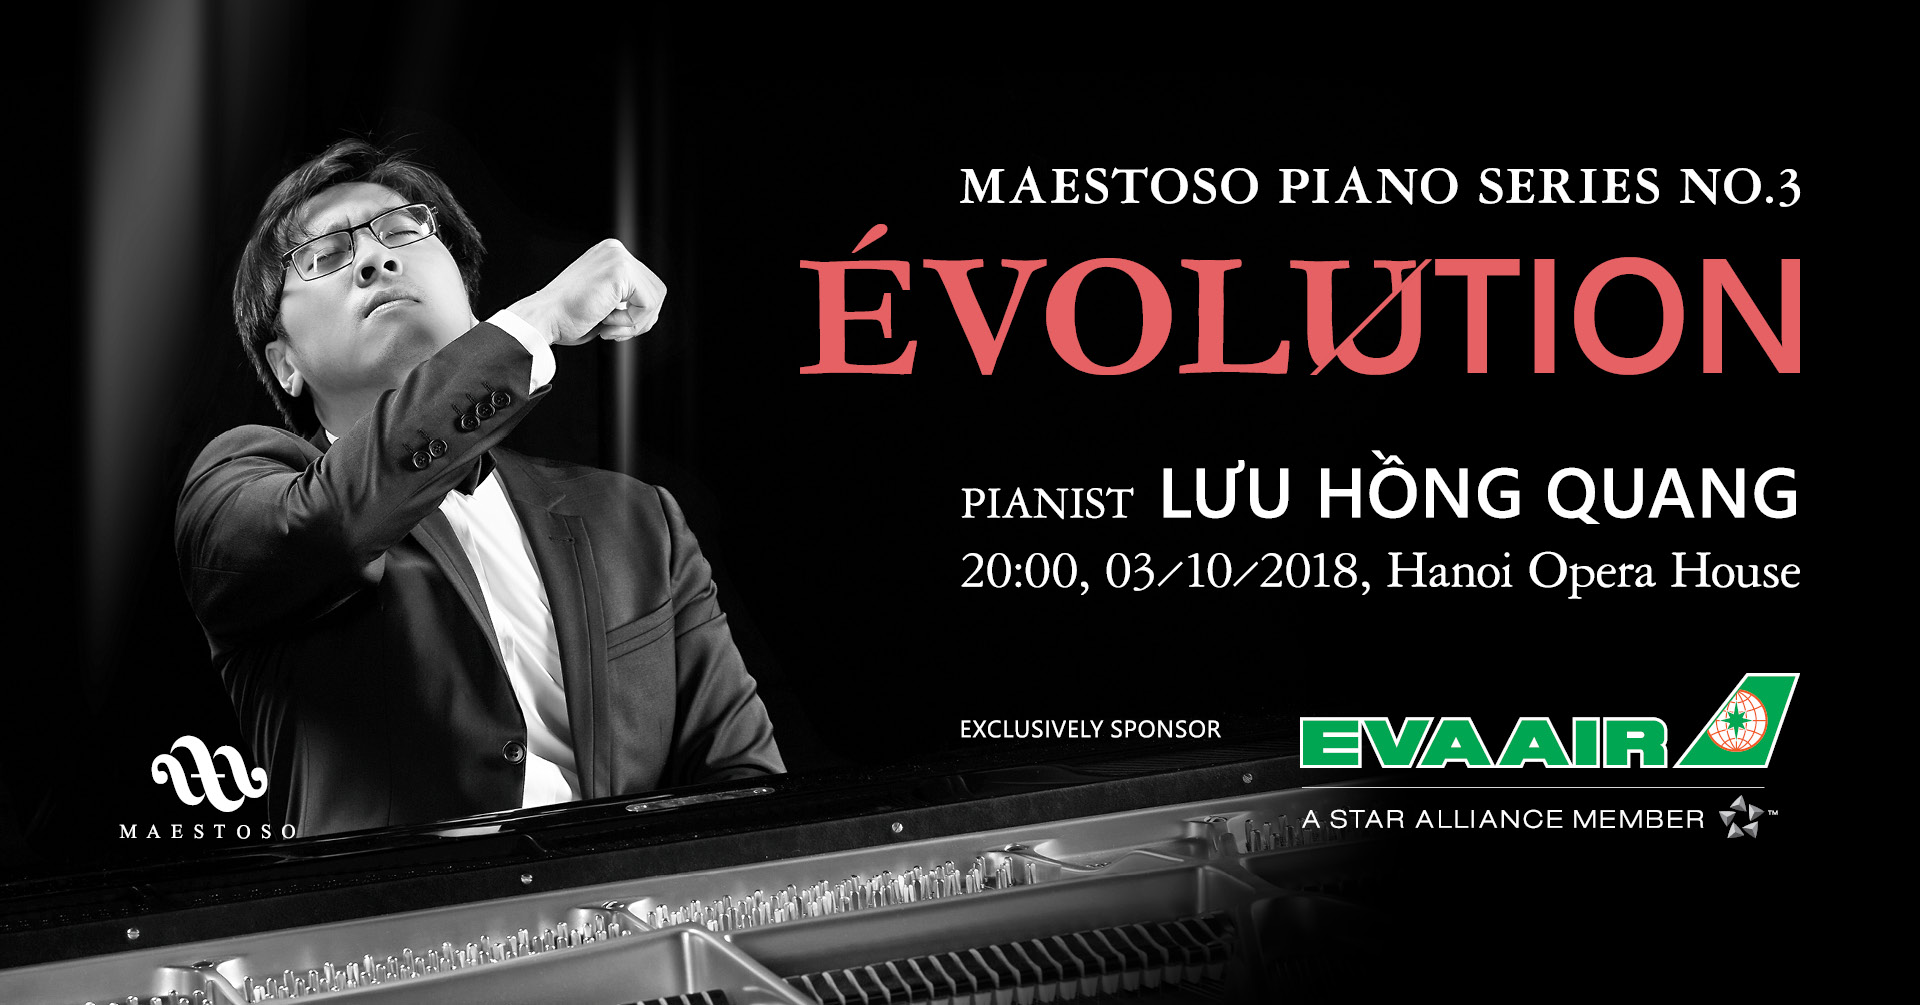 2018.10.03 - Piano Series No. 3 "ÉVOLUTION"